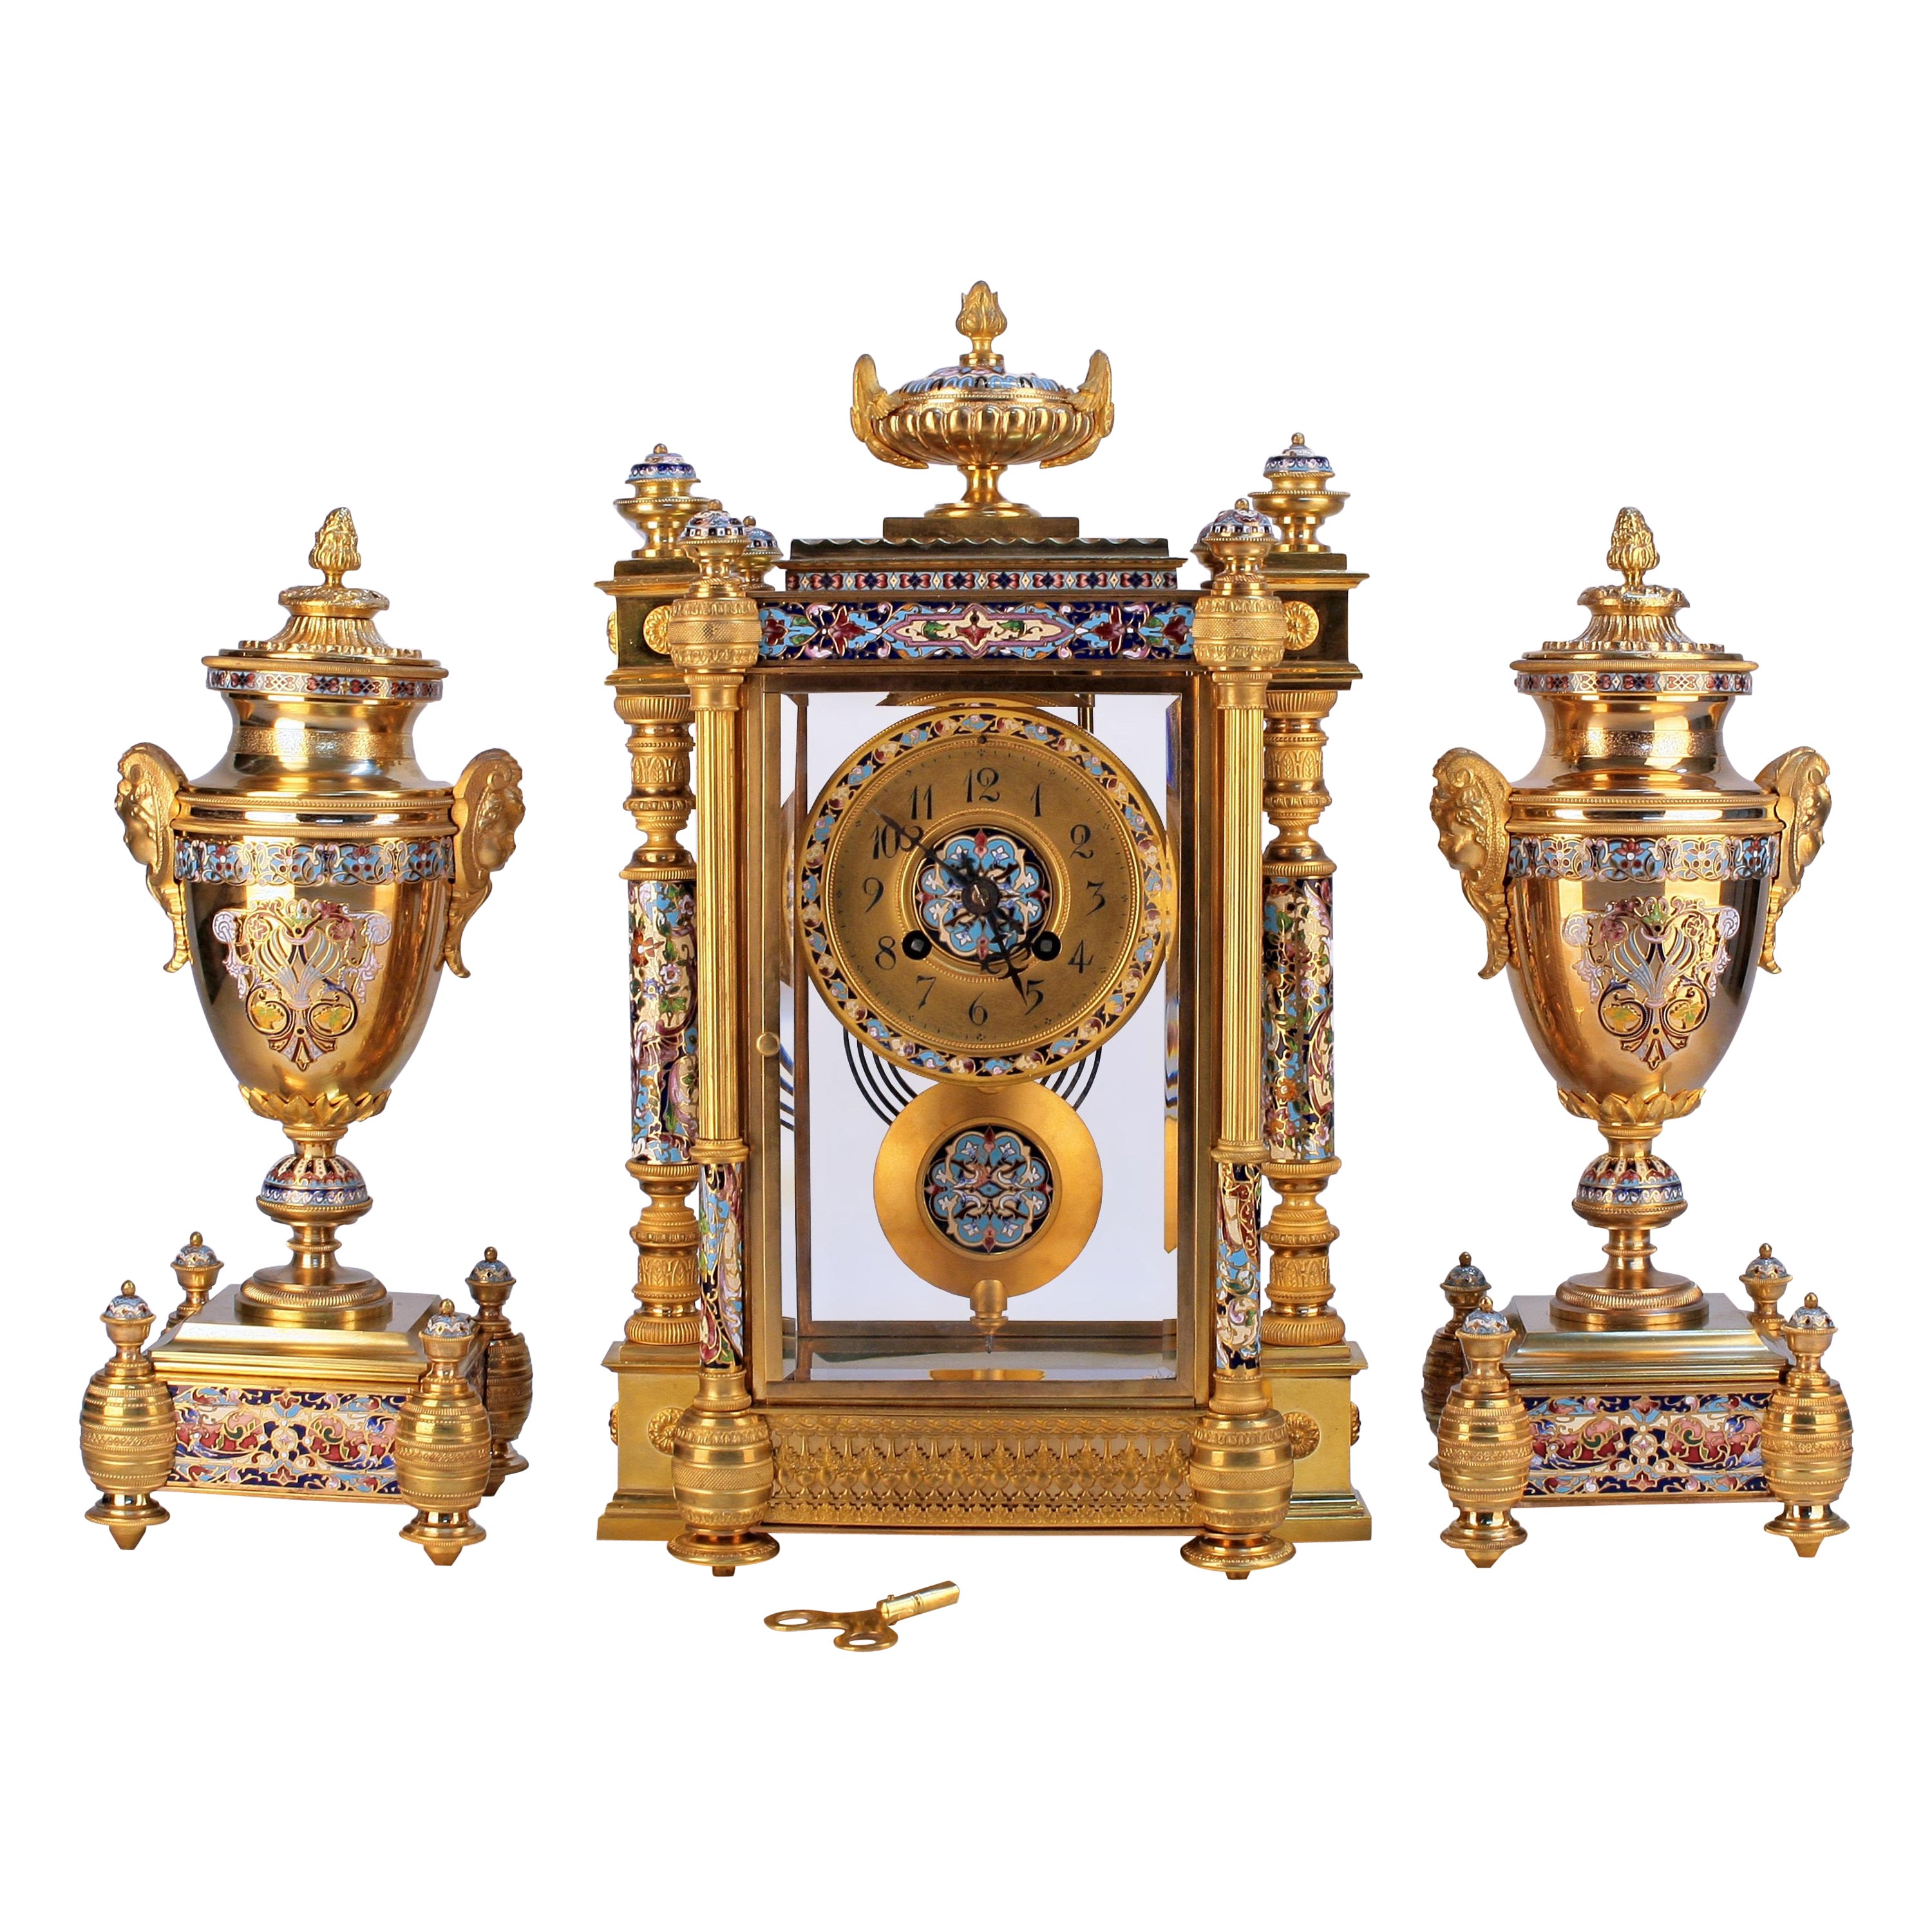 Fin du 19ème siècle, Garniture d'Horloge en Ormolu Champlevé émaillé par Japy Frères.